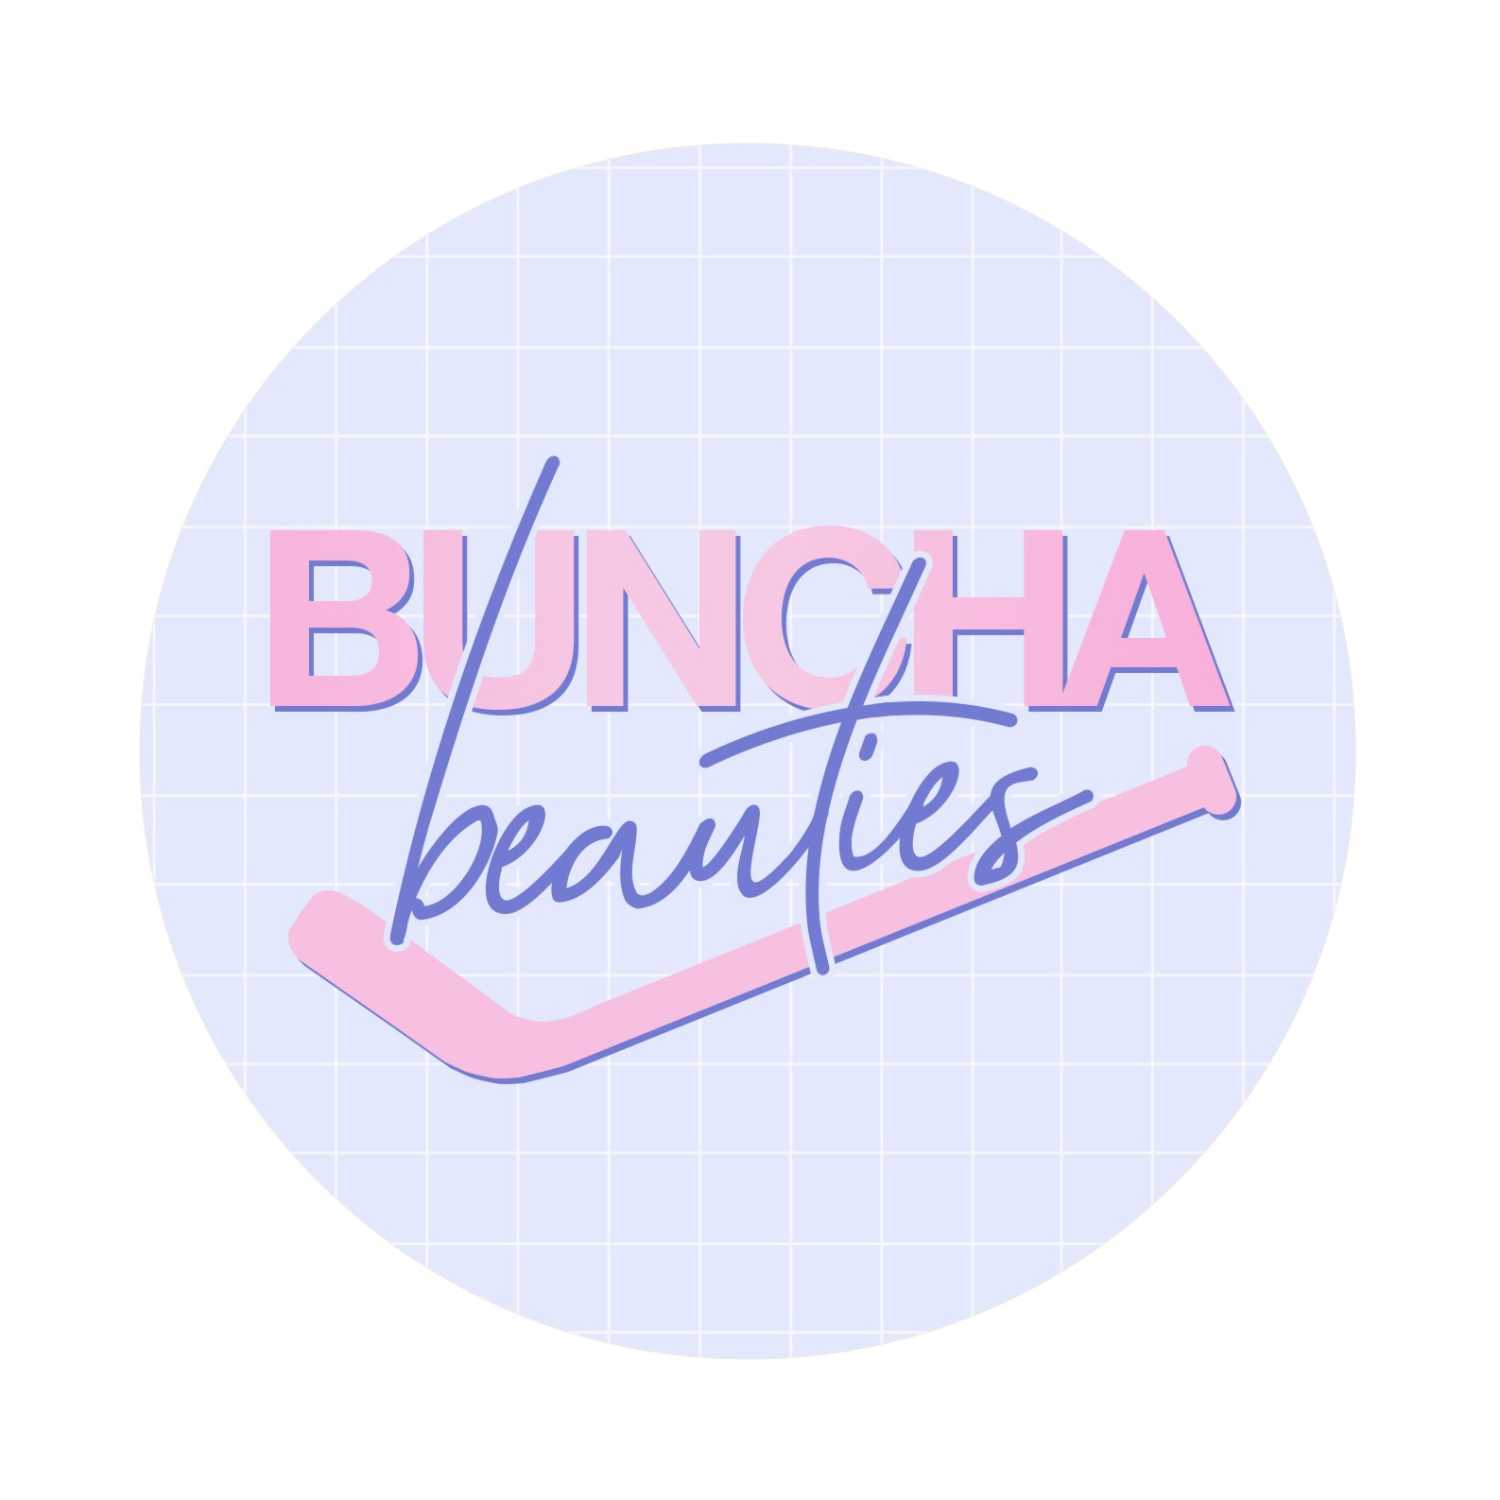 Episode 31 (Buncha Beauties Version)